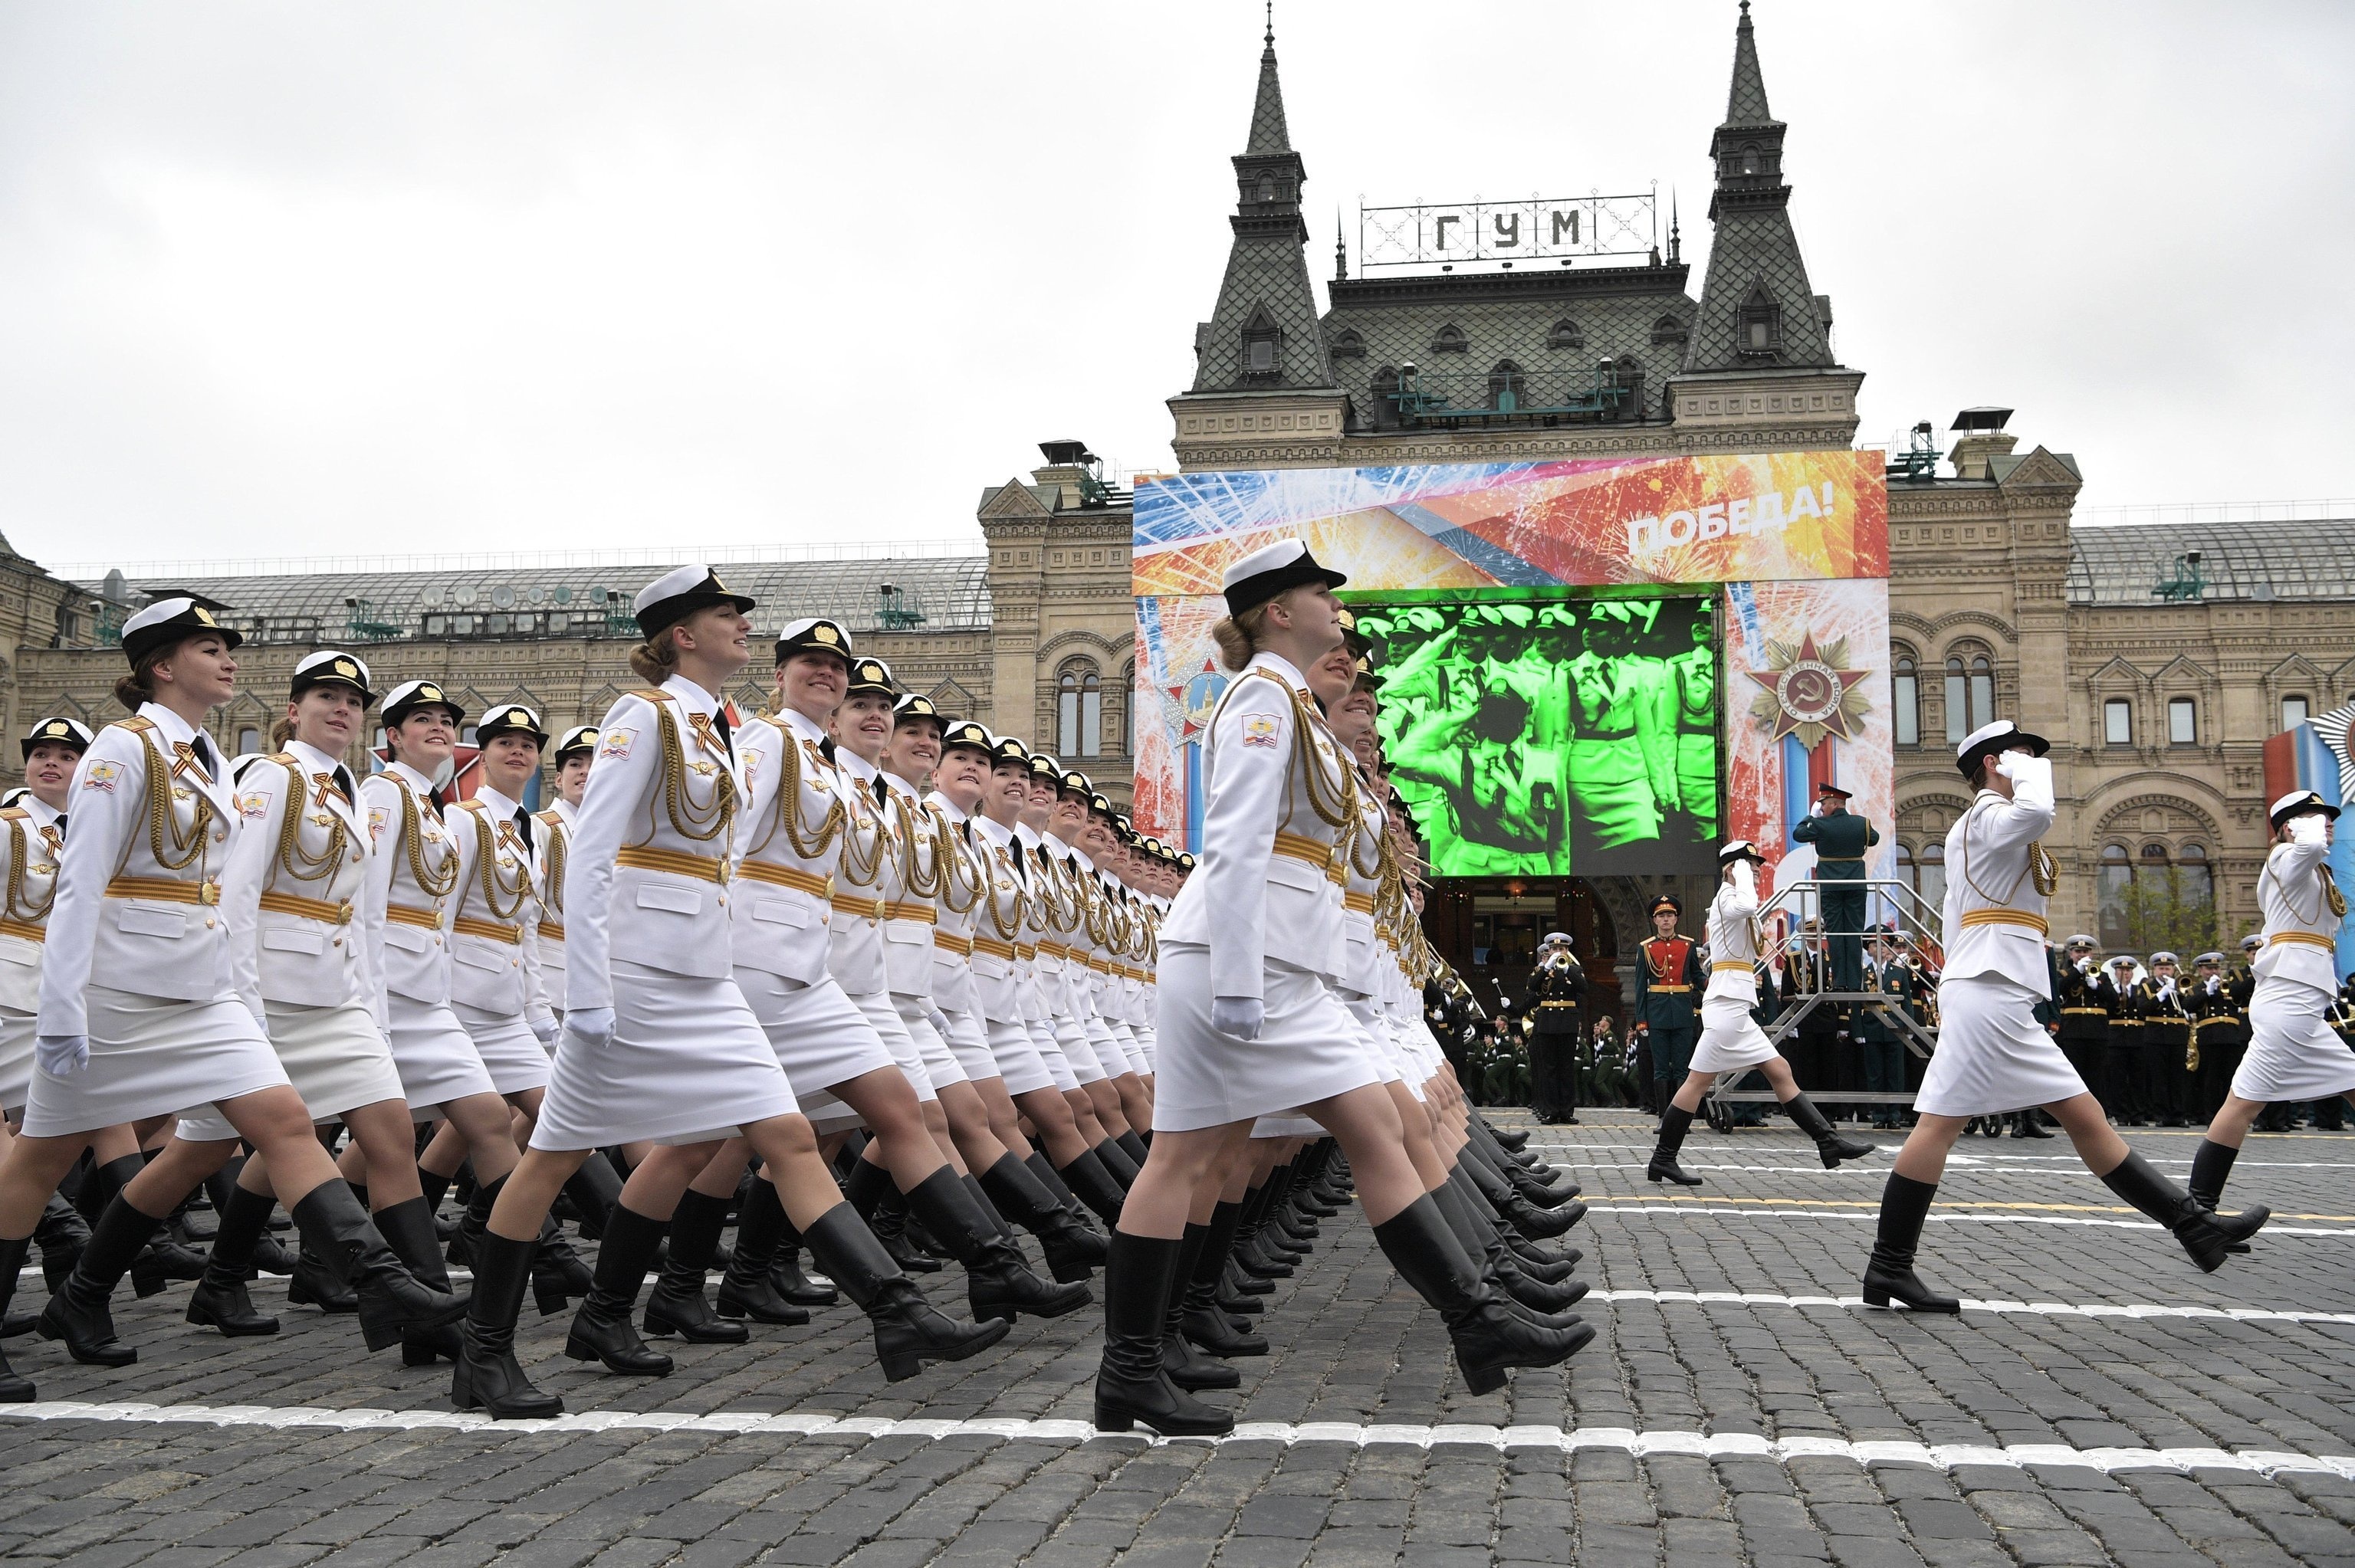 День победы народный праздник. Женщины на параде Победы 2021. Парад Победы 2021 в Москве женщины маршируют. Солдаты на параде. Женщины военные в России на параде.